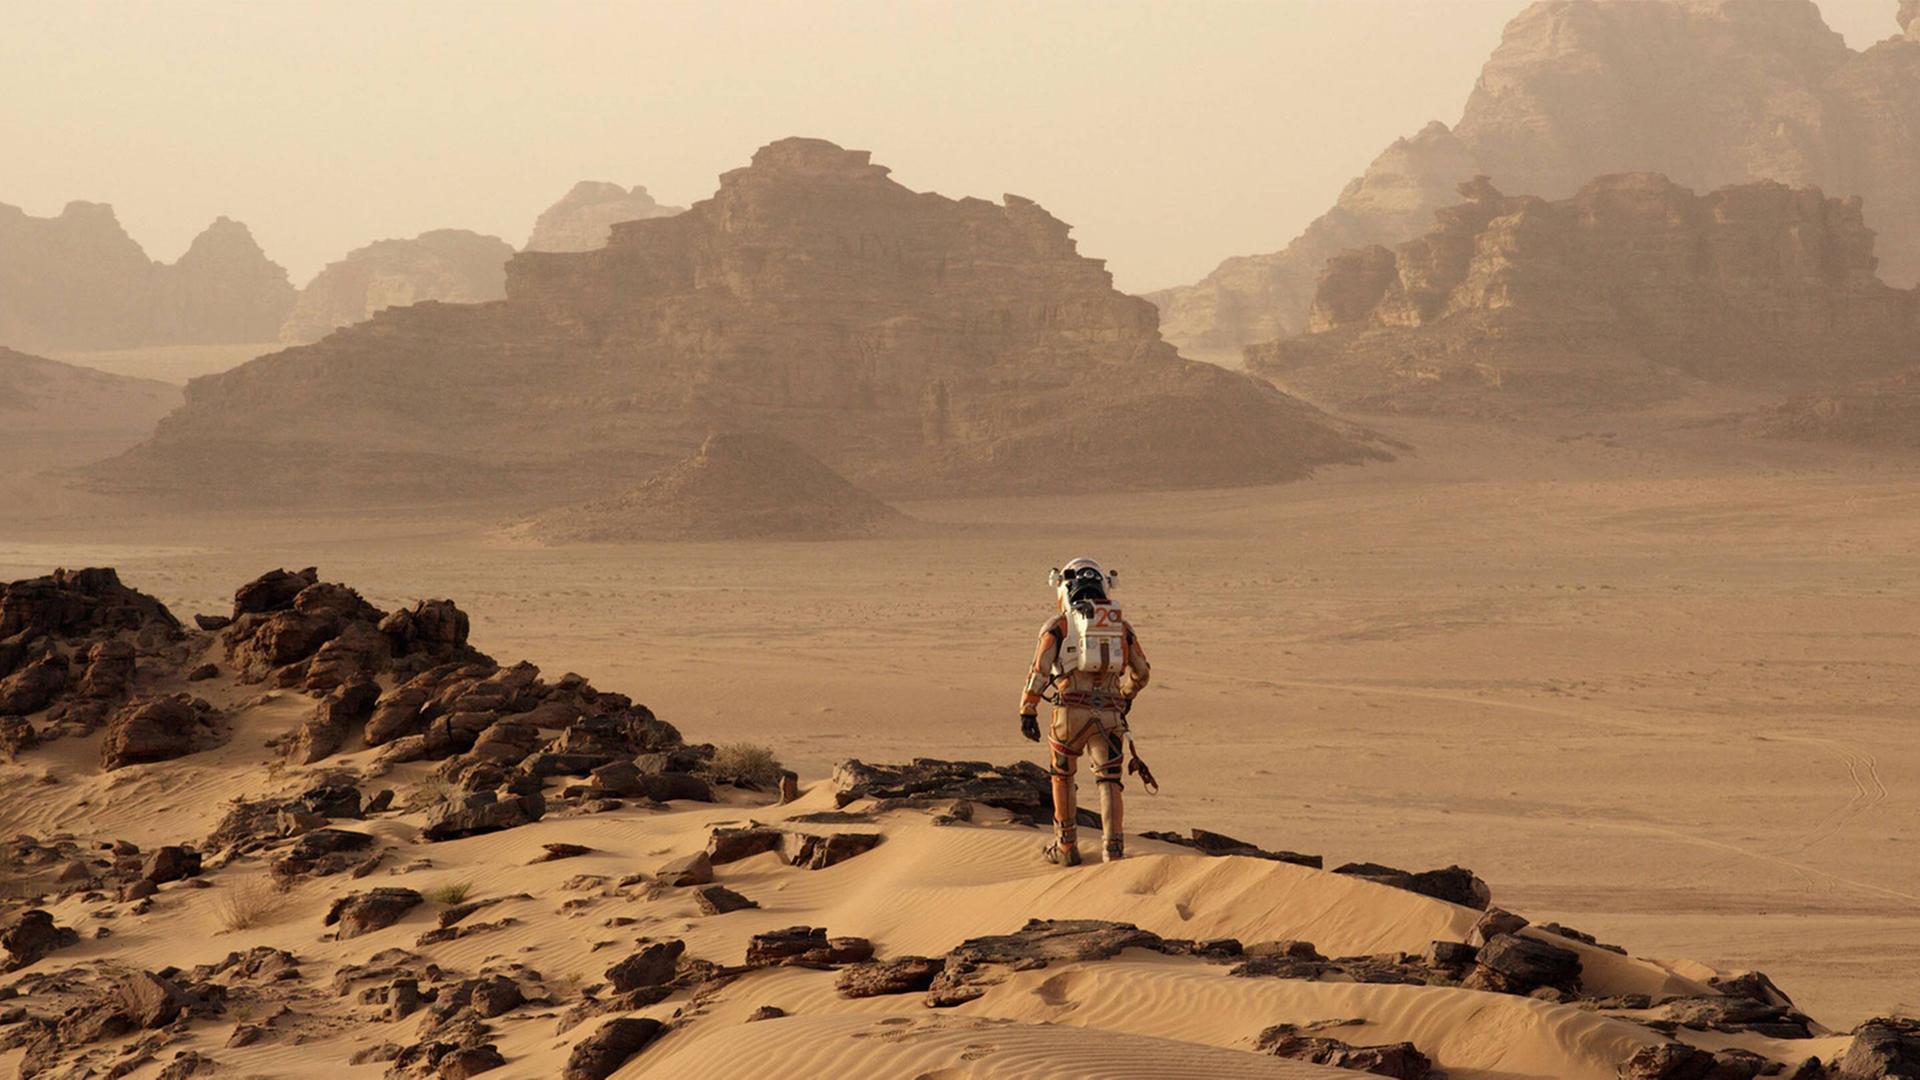 Szene aus "Der Marsianer" von Ridley Scott: Mars-Astronaut Mark Watney muss alleine auf dem roten Planeten überleben.